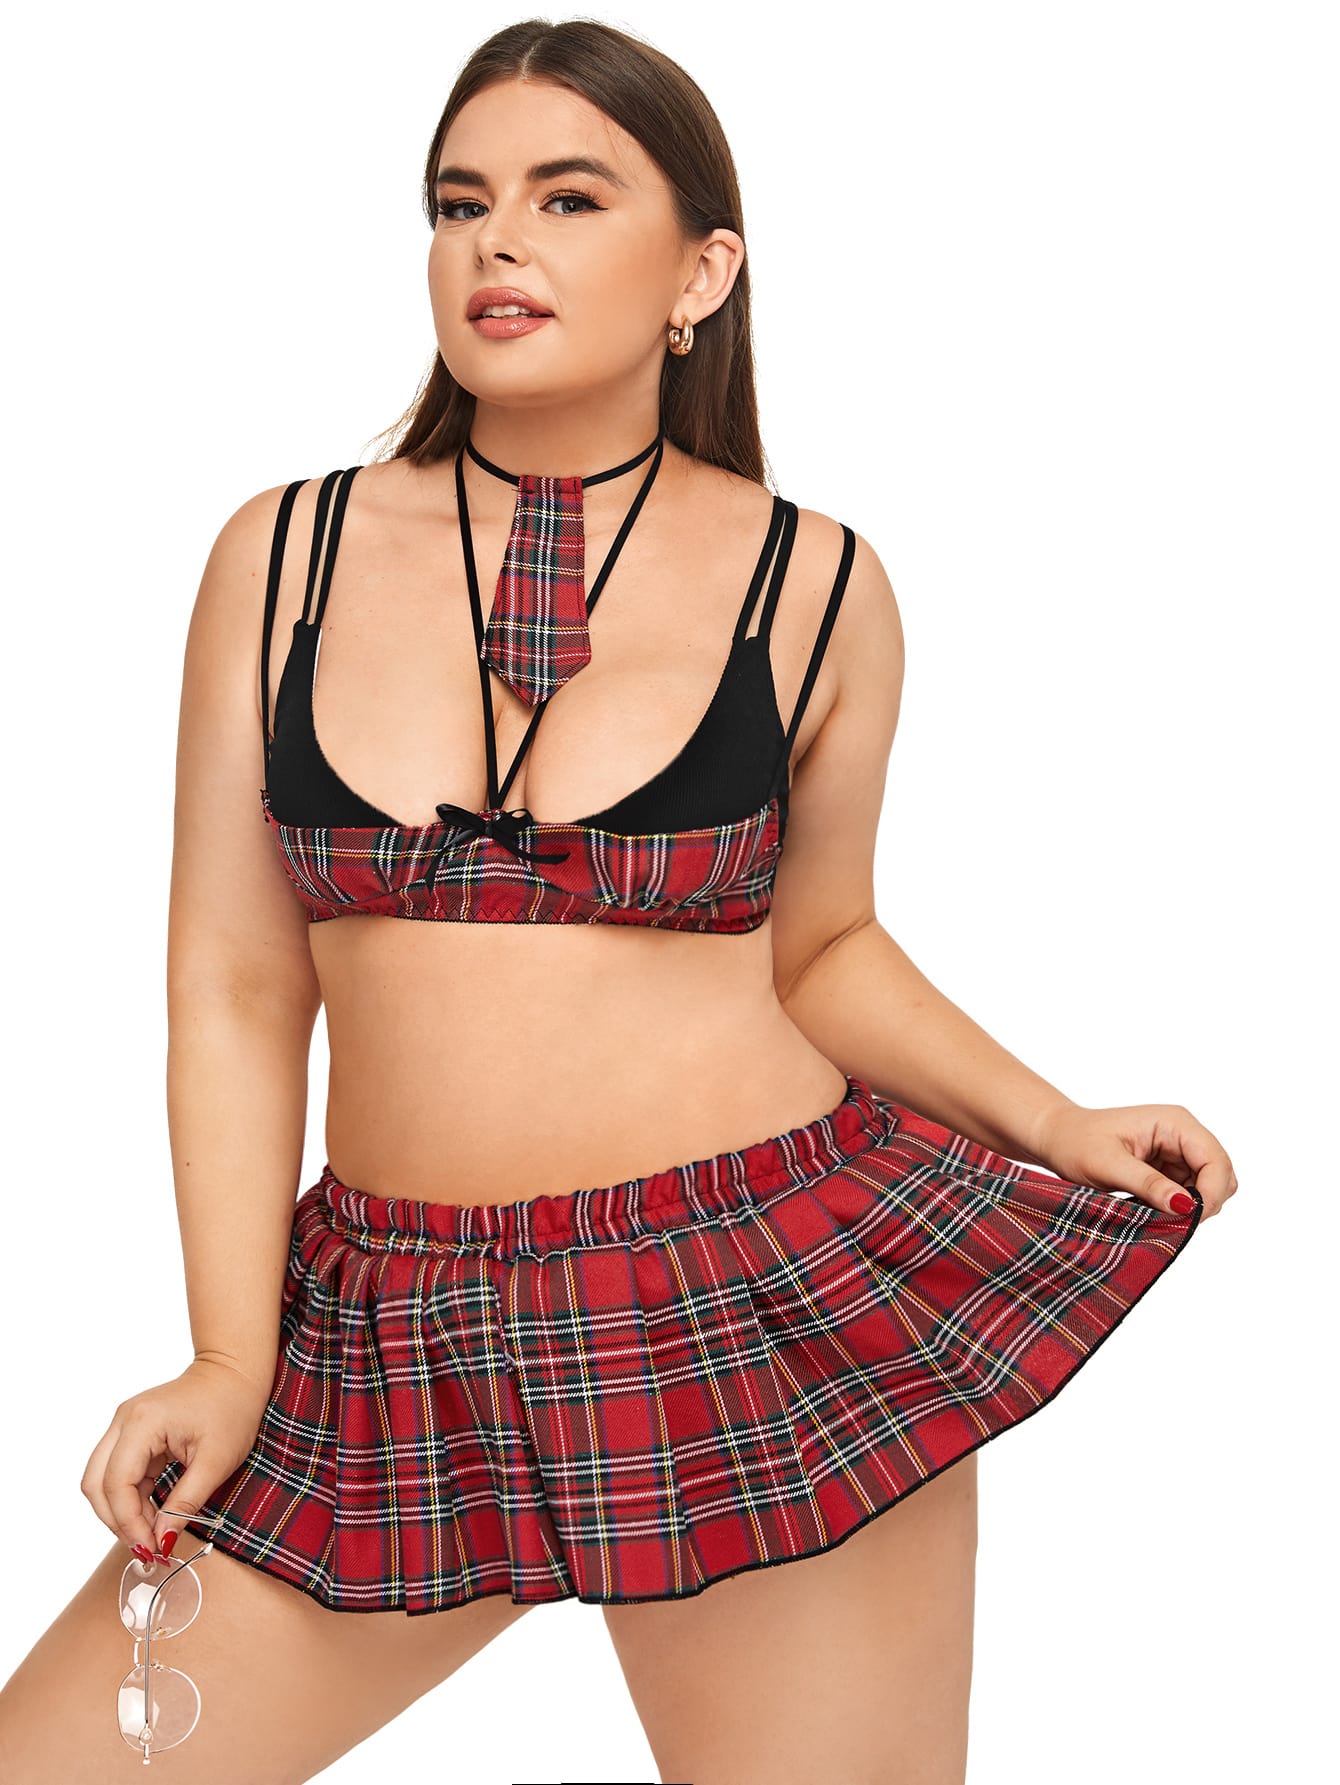 Sexy schoolgirl costume plus size